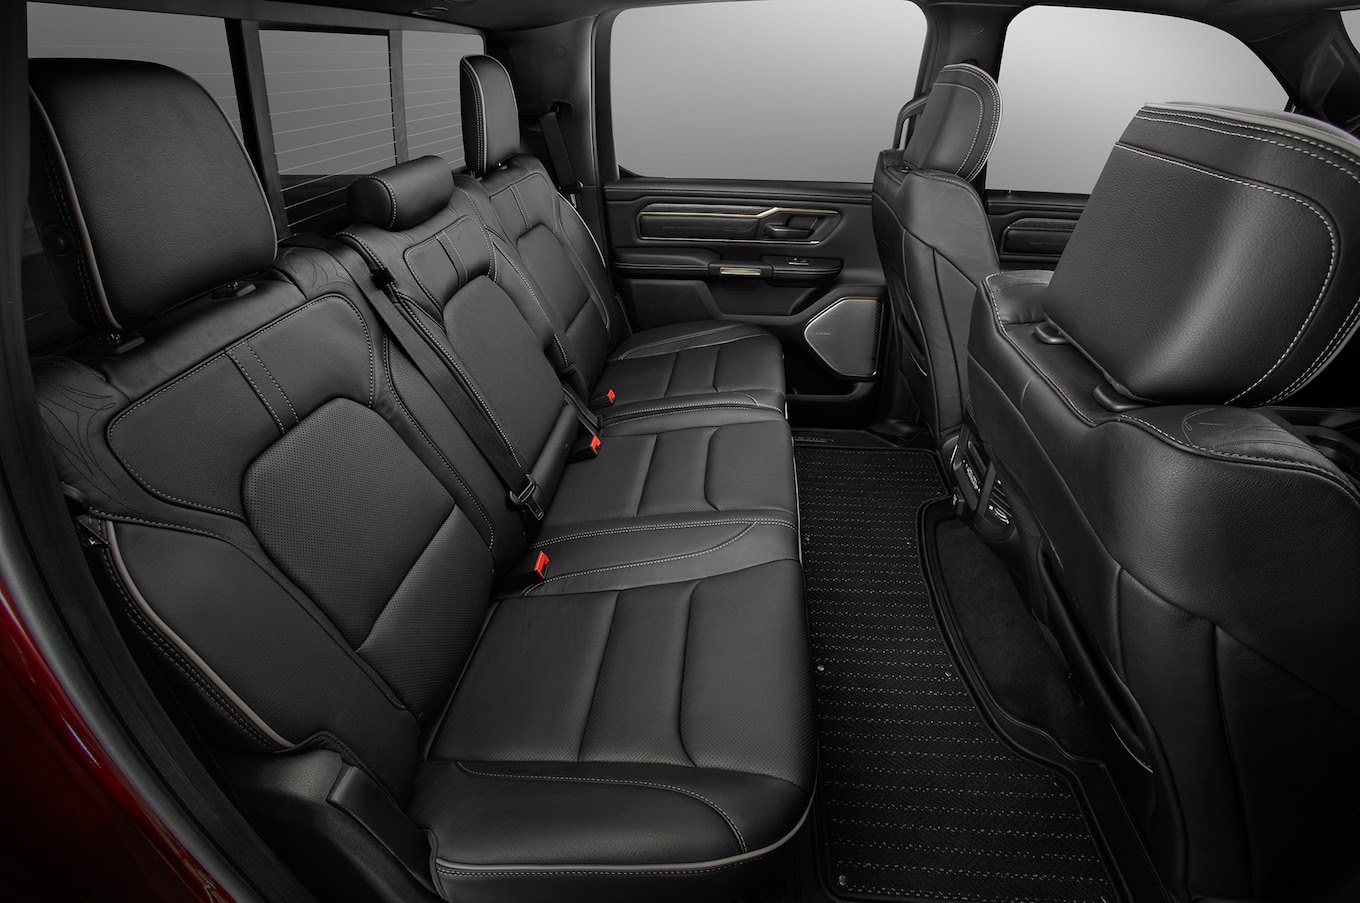 2019 Dodge Ram 1500 Crew Cab Interior Interior Design And